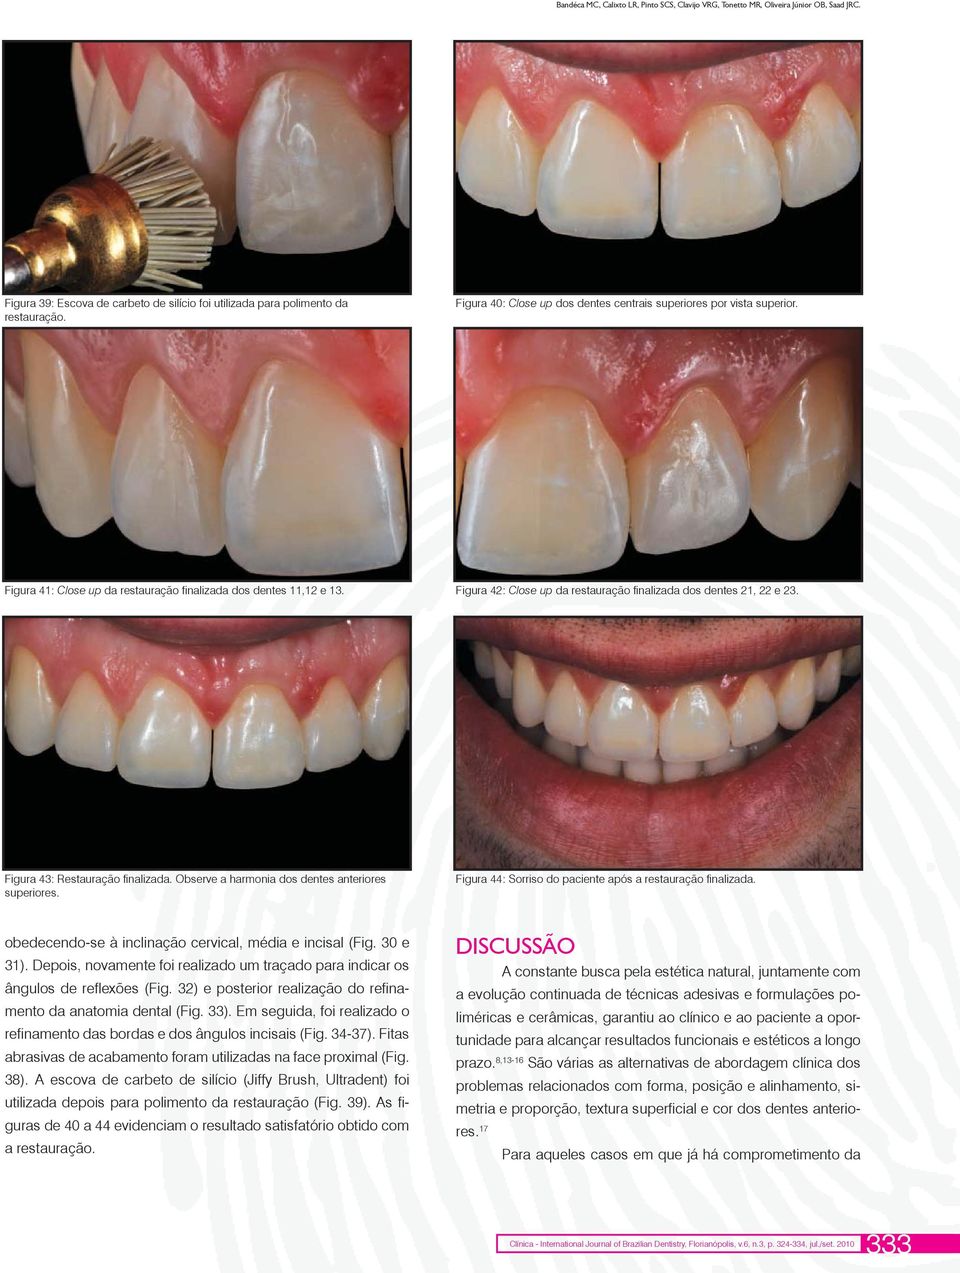 Figura 42: Close up da restauração finalizada dos dentes 21, 22 e 23. Figura 43: Restauração finalizada. Observe a harmonia dos dentes anteriores superiores.